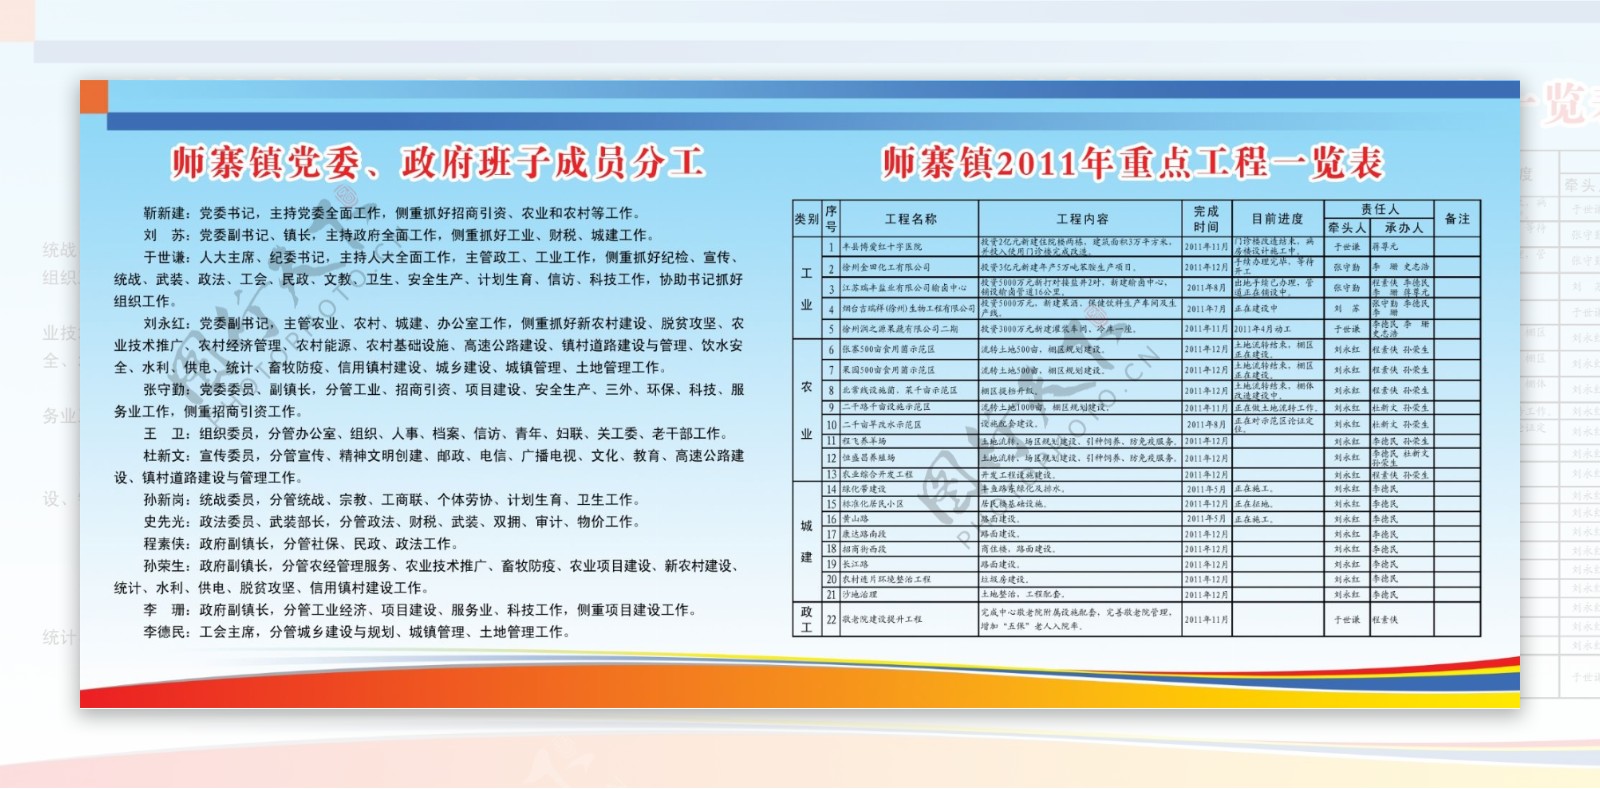 党委政府成员分工乡镇重点工程一览表宣传画